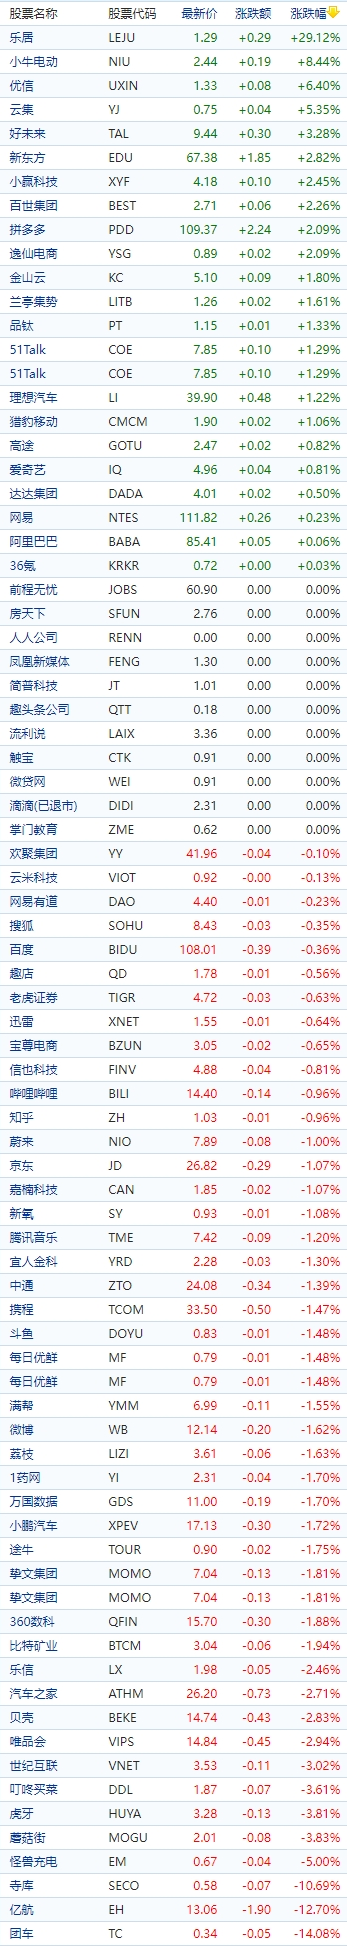 中国概念股收盘：小i机器人涨超19%，开心汽车跌超37%、亿航跌超12%